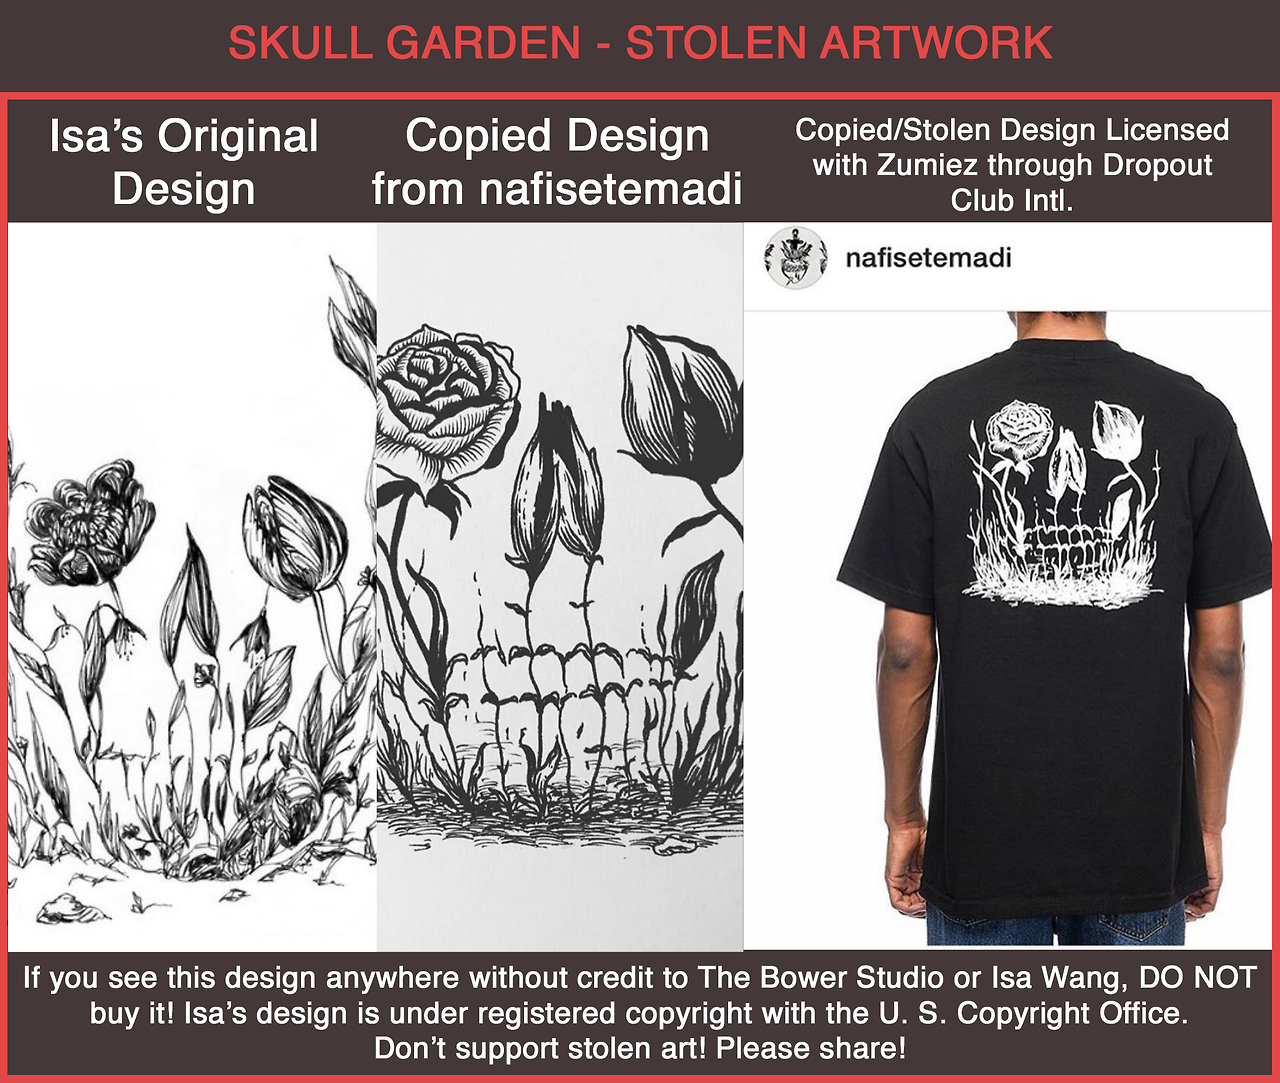 The Bower Studio Isa Wang S Original Skull Garden Design Has Been